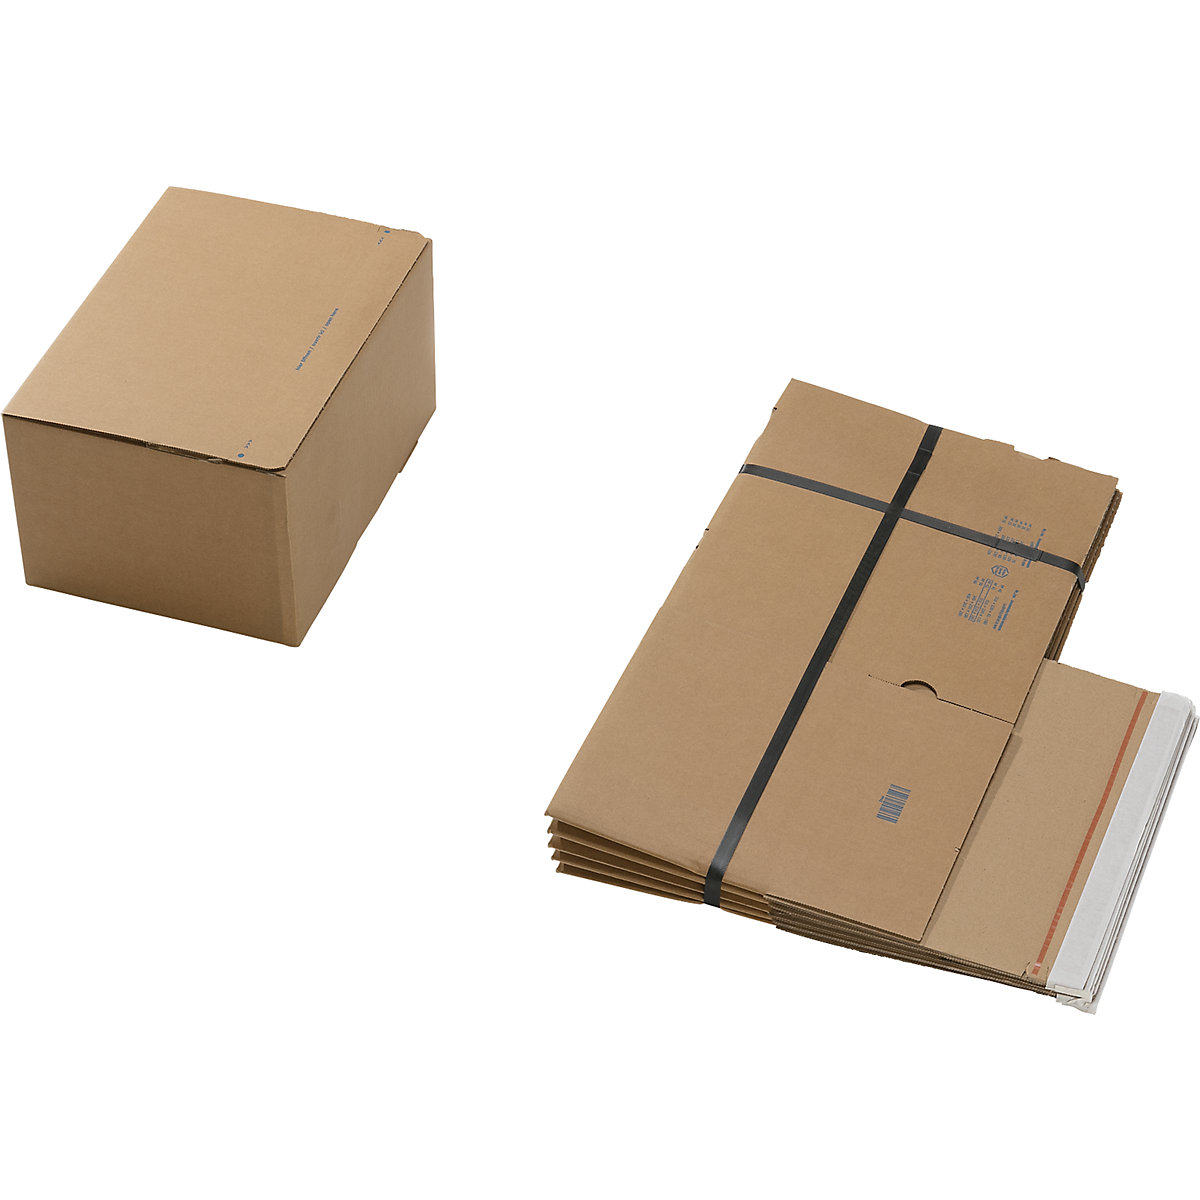 Cajas para envíos, con fondo preparado para montaje rápido y cierre autoadhesivo, dimensiones interiores L x A x H 310 x 230 x 160 mm, UE 100 unid.-5